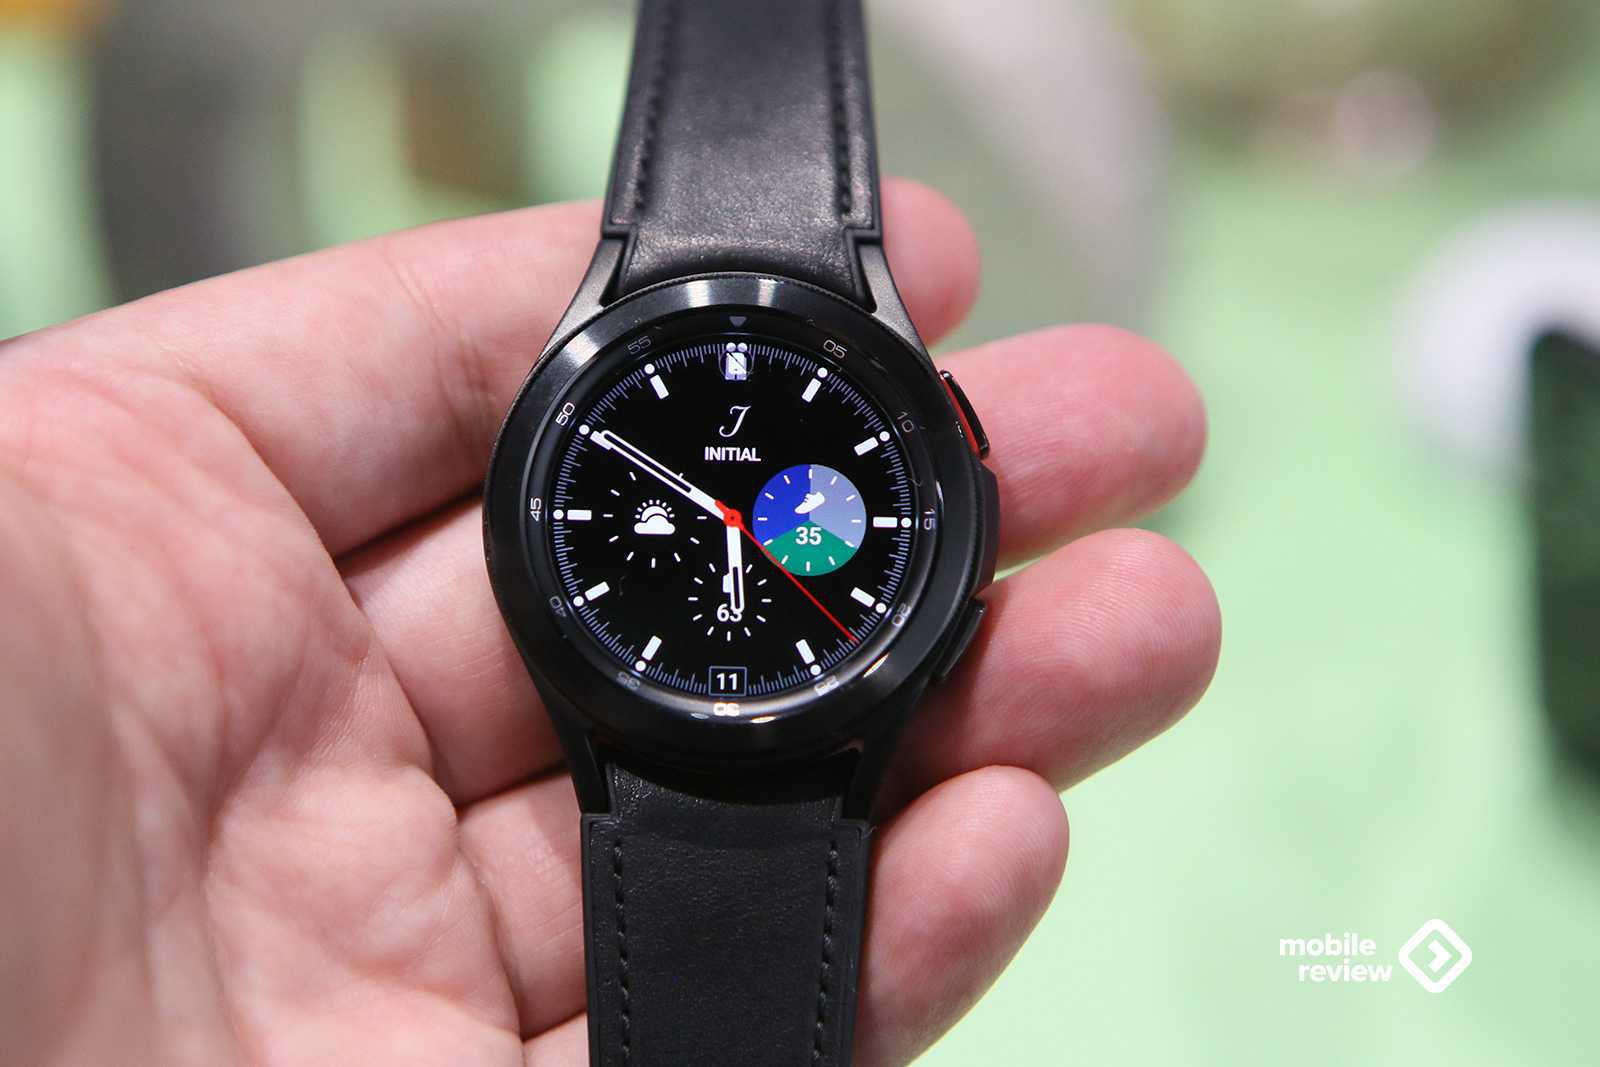 Samsung galaxy watch classic 46